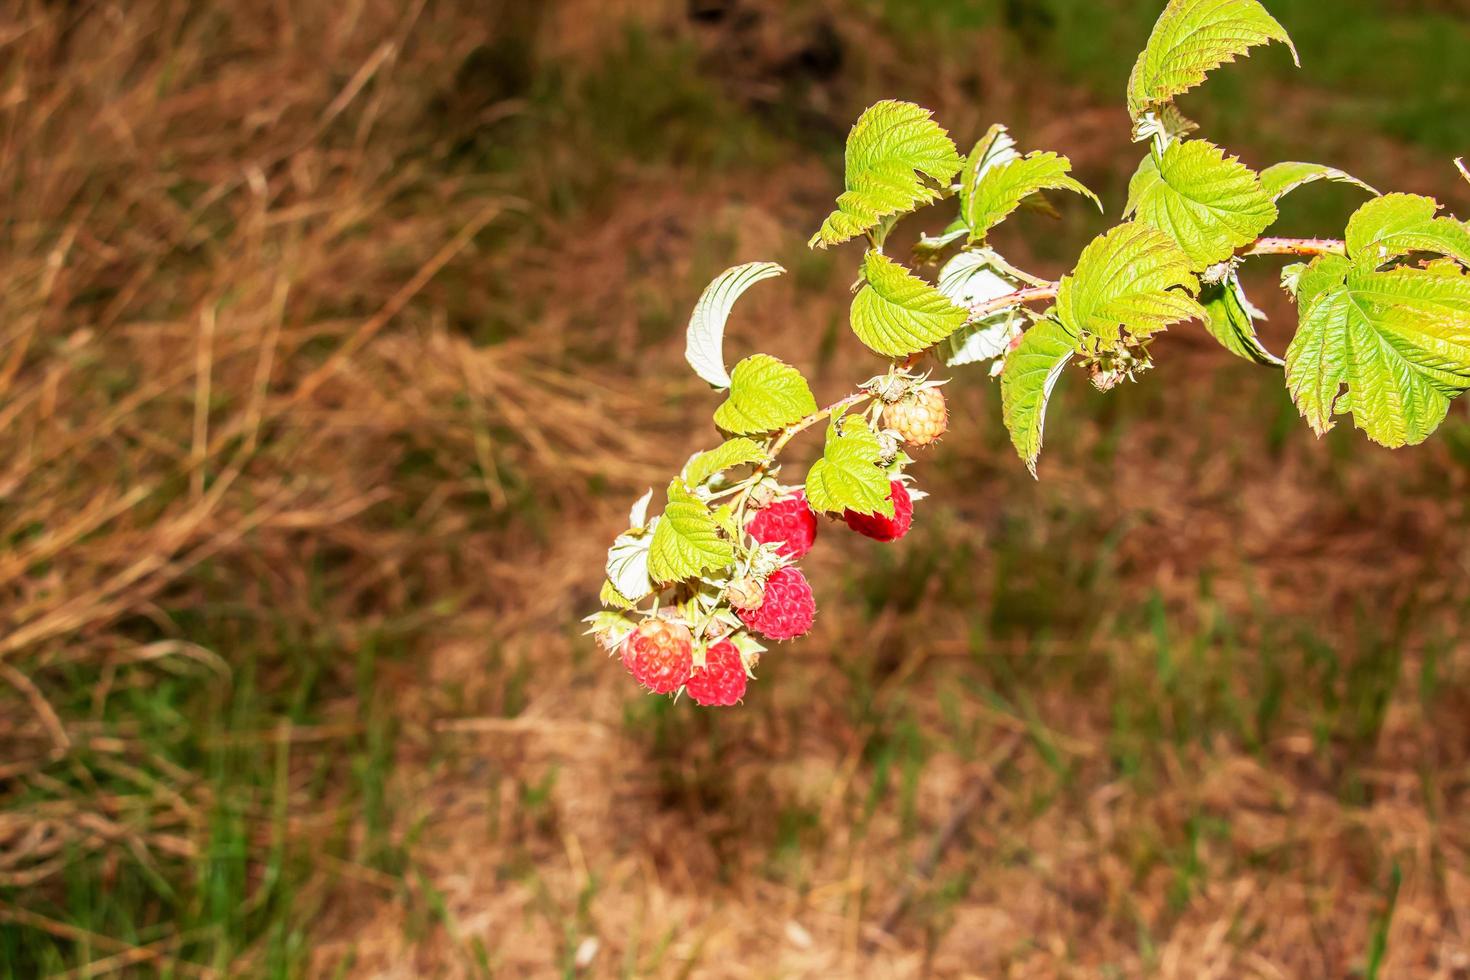 röd hallon buske rubus idaeus l med frukt och blommor i en vild trädgård. ung grön skjuter med grön knoppar. selektiv fokus. foto